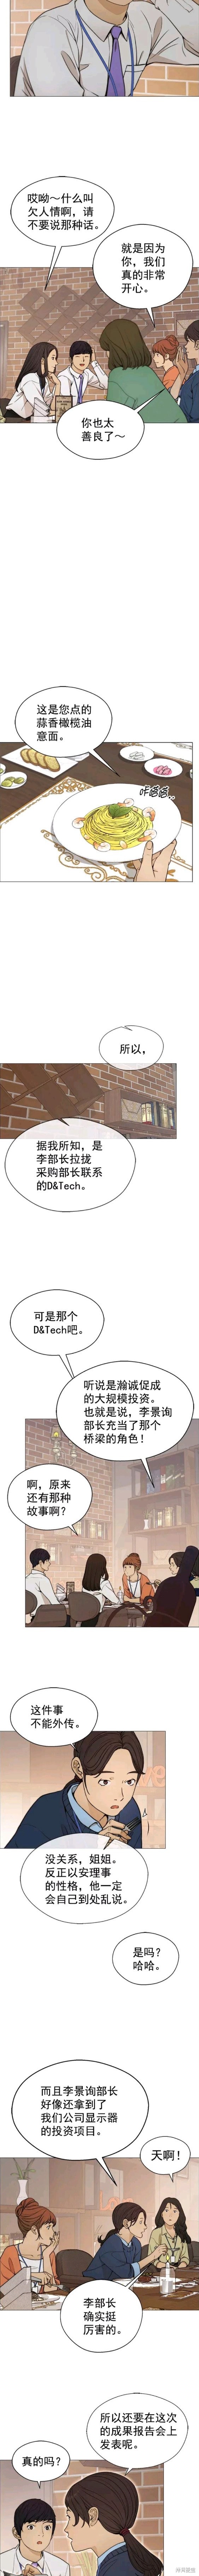 男子汉漫画,第104话4图